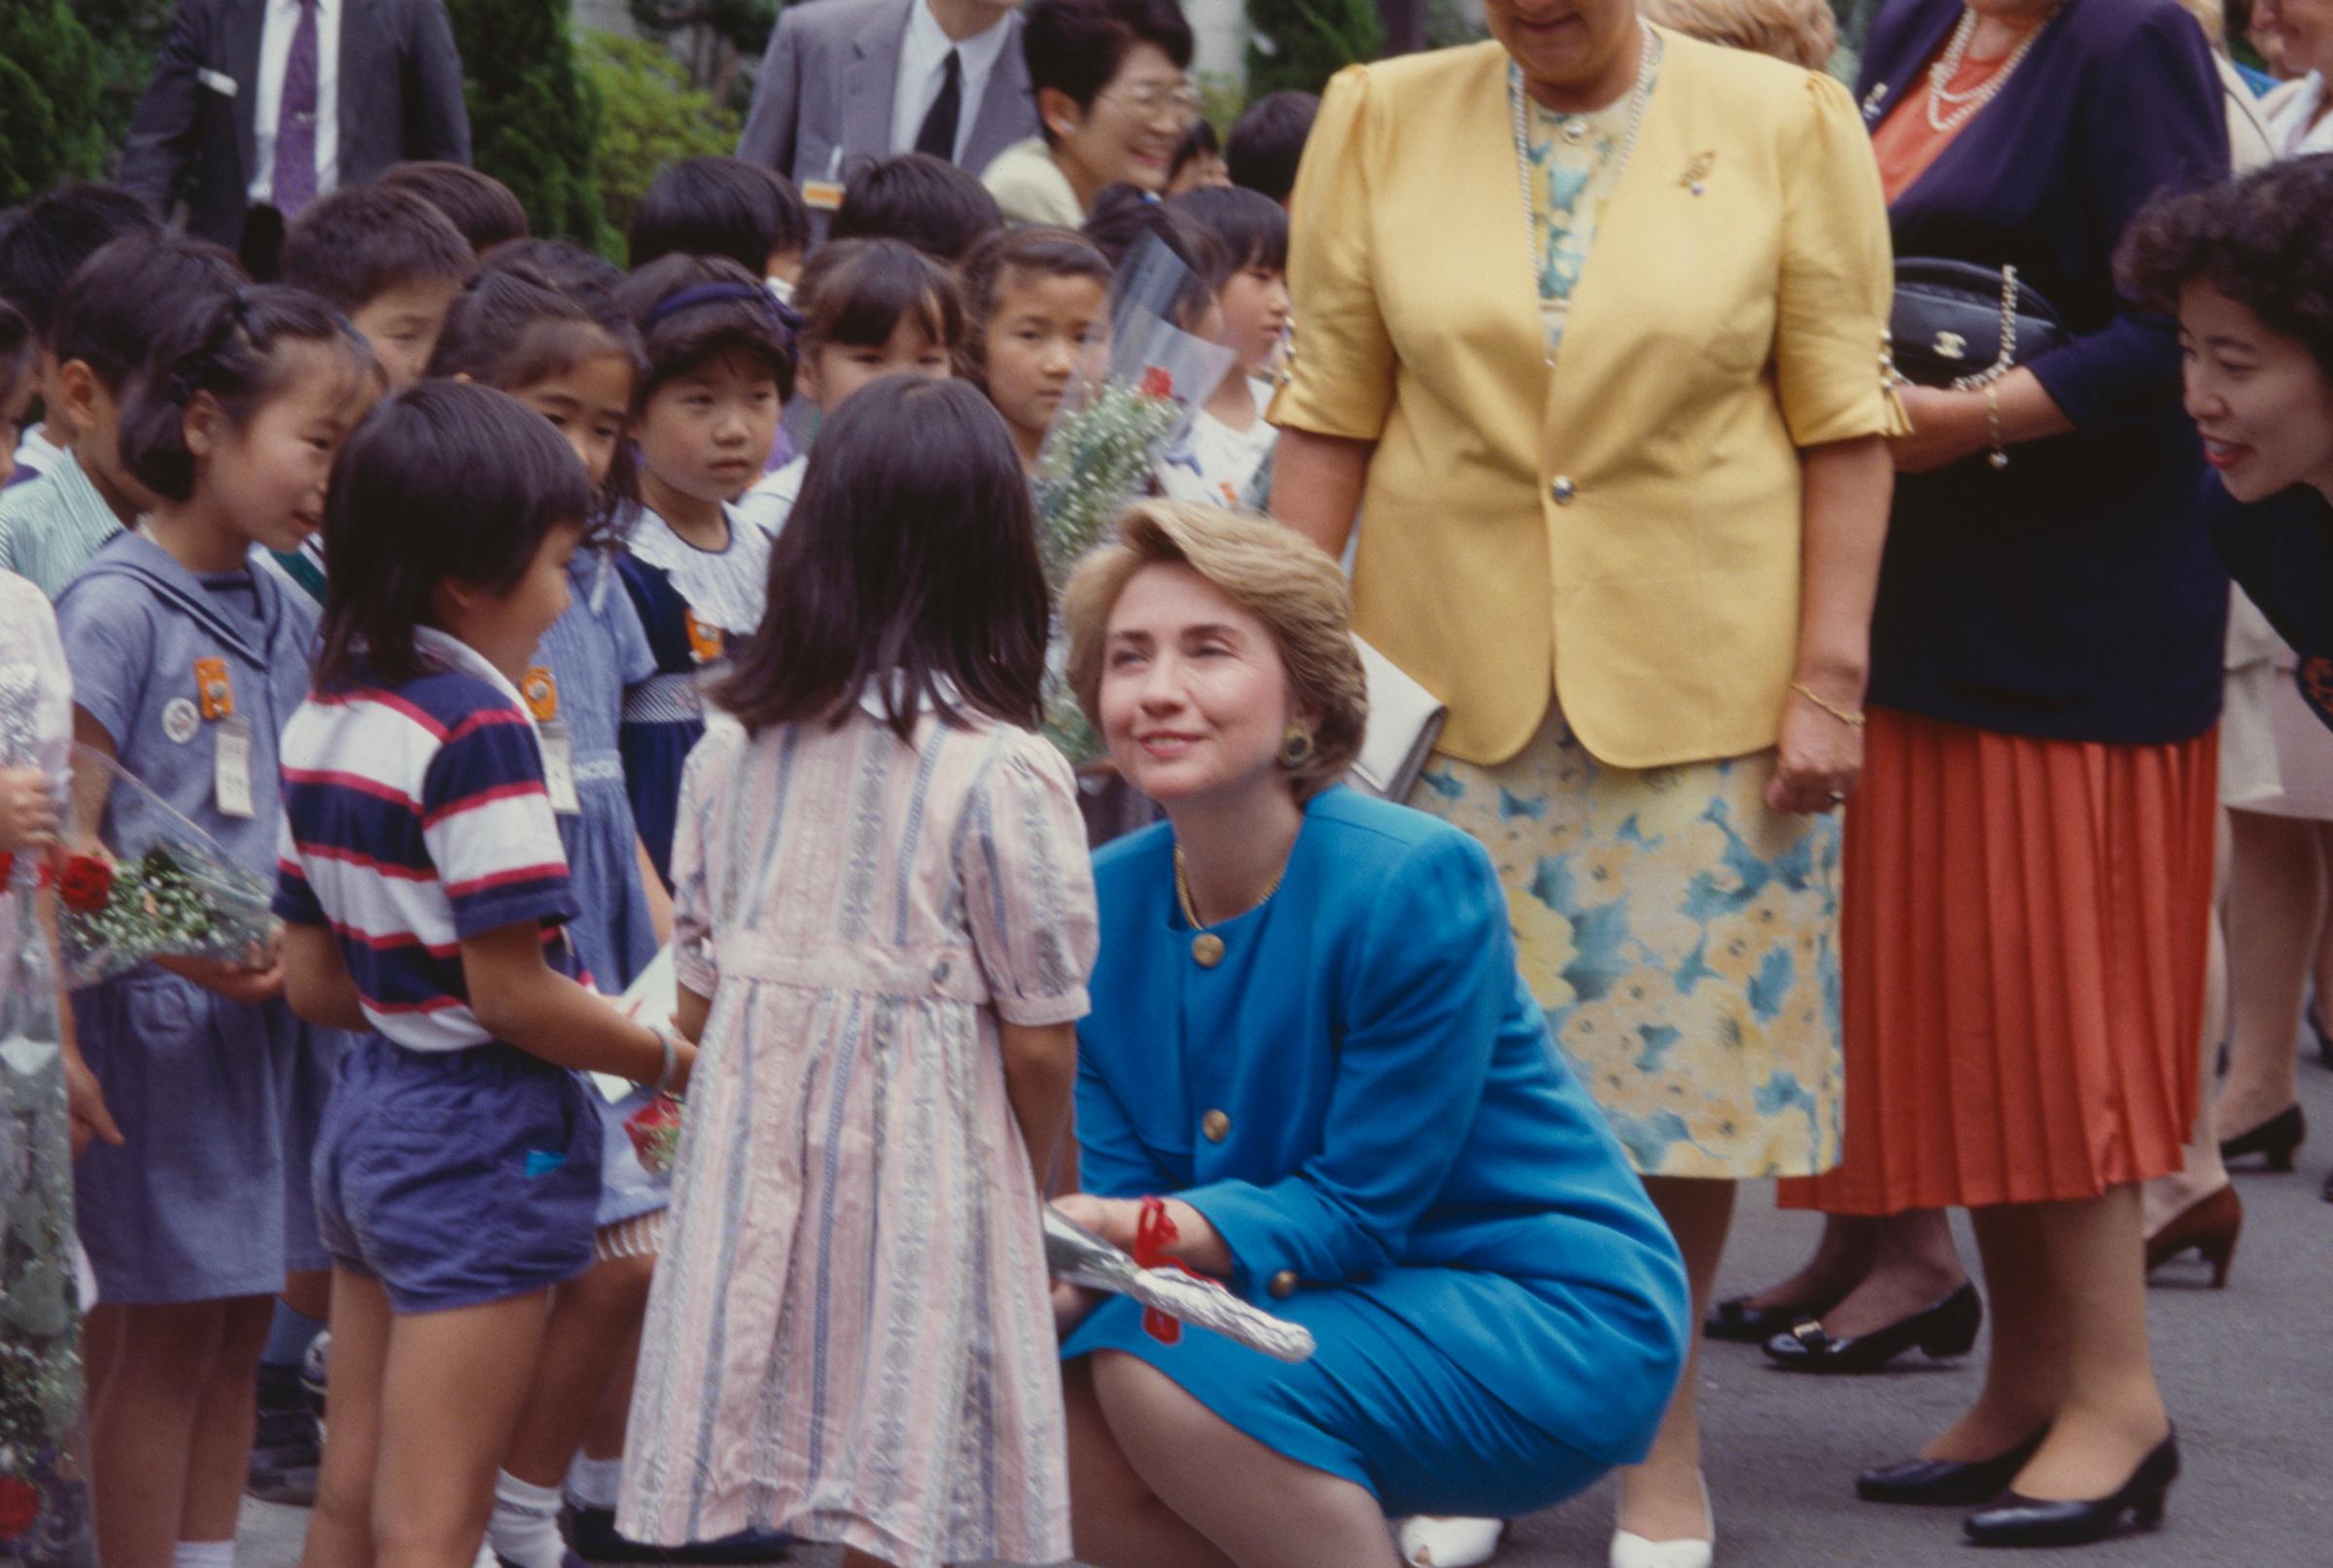 Hillary Clinton Meeting Children